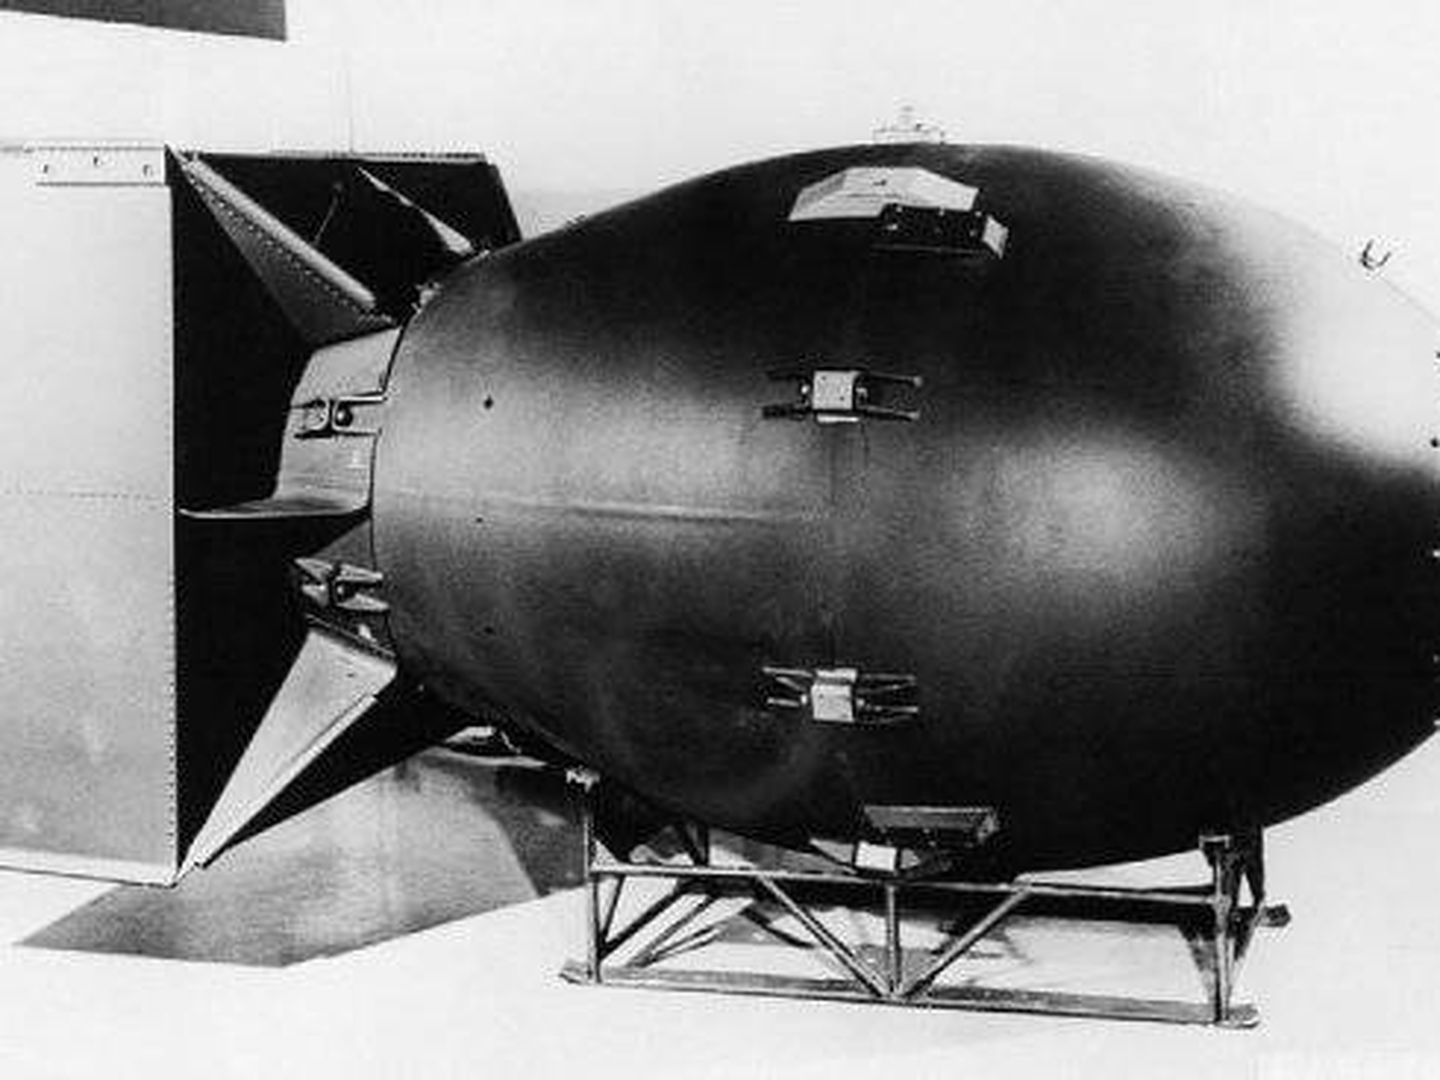 Vista de Fat Man, la bomba atómica lanzada en 1945. (M.MC)